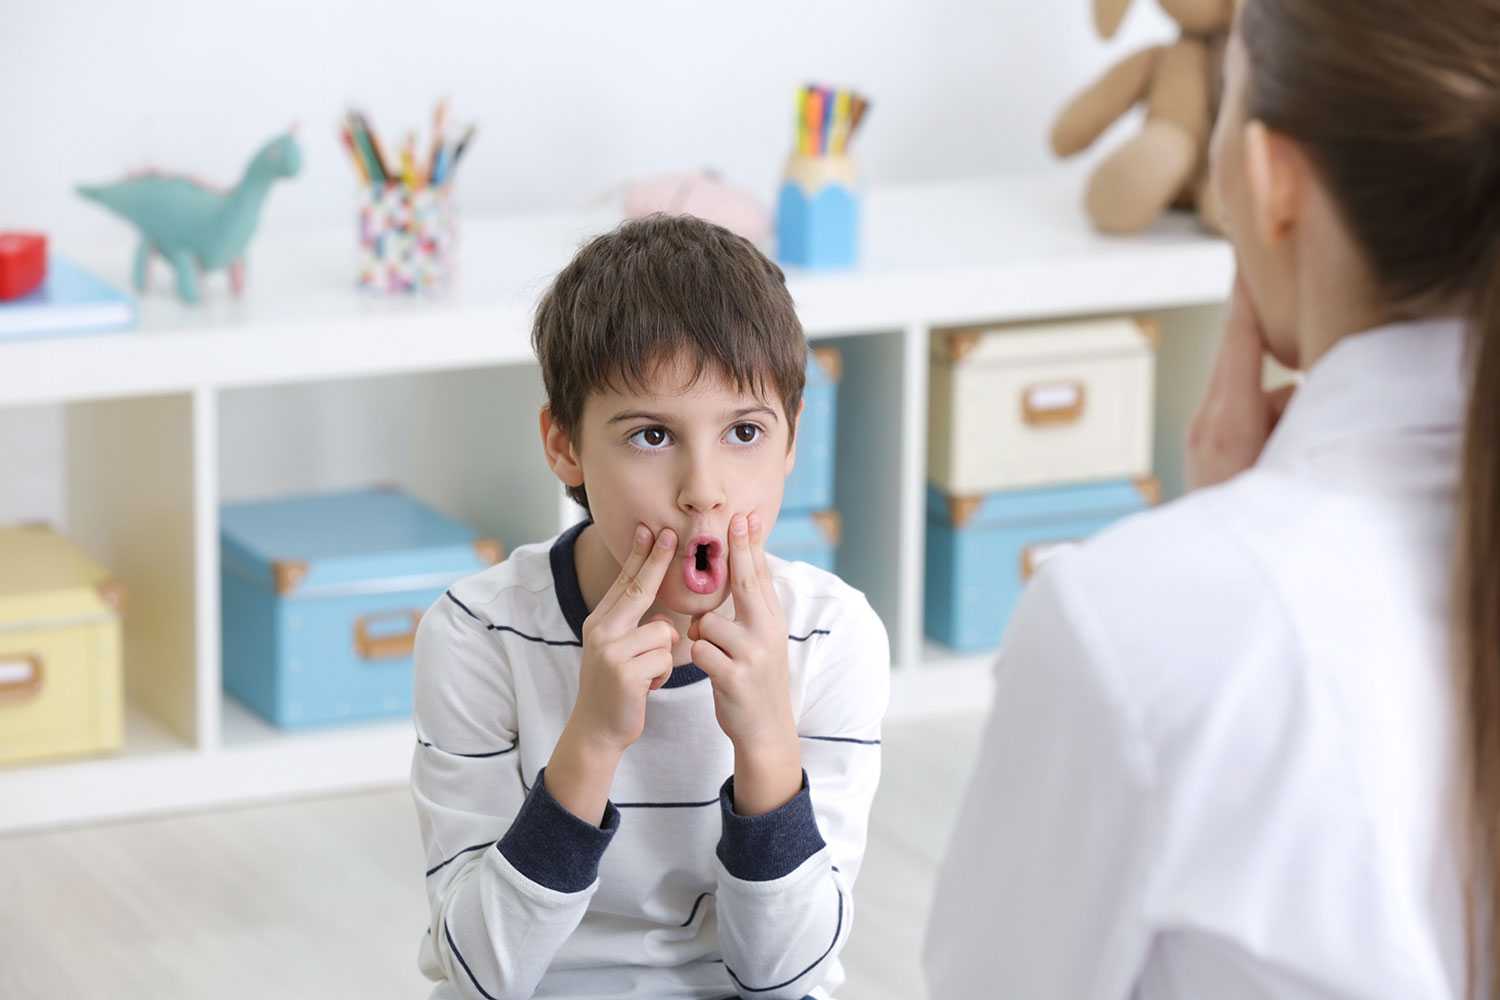 Заикание у детей 3-5 лет может иметь множество причин, поэтому лечение необходимо назначать немедленно, пока речь ребенка окончательно не сформировалась.